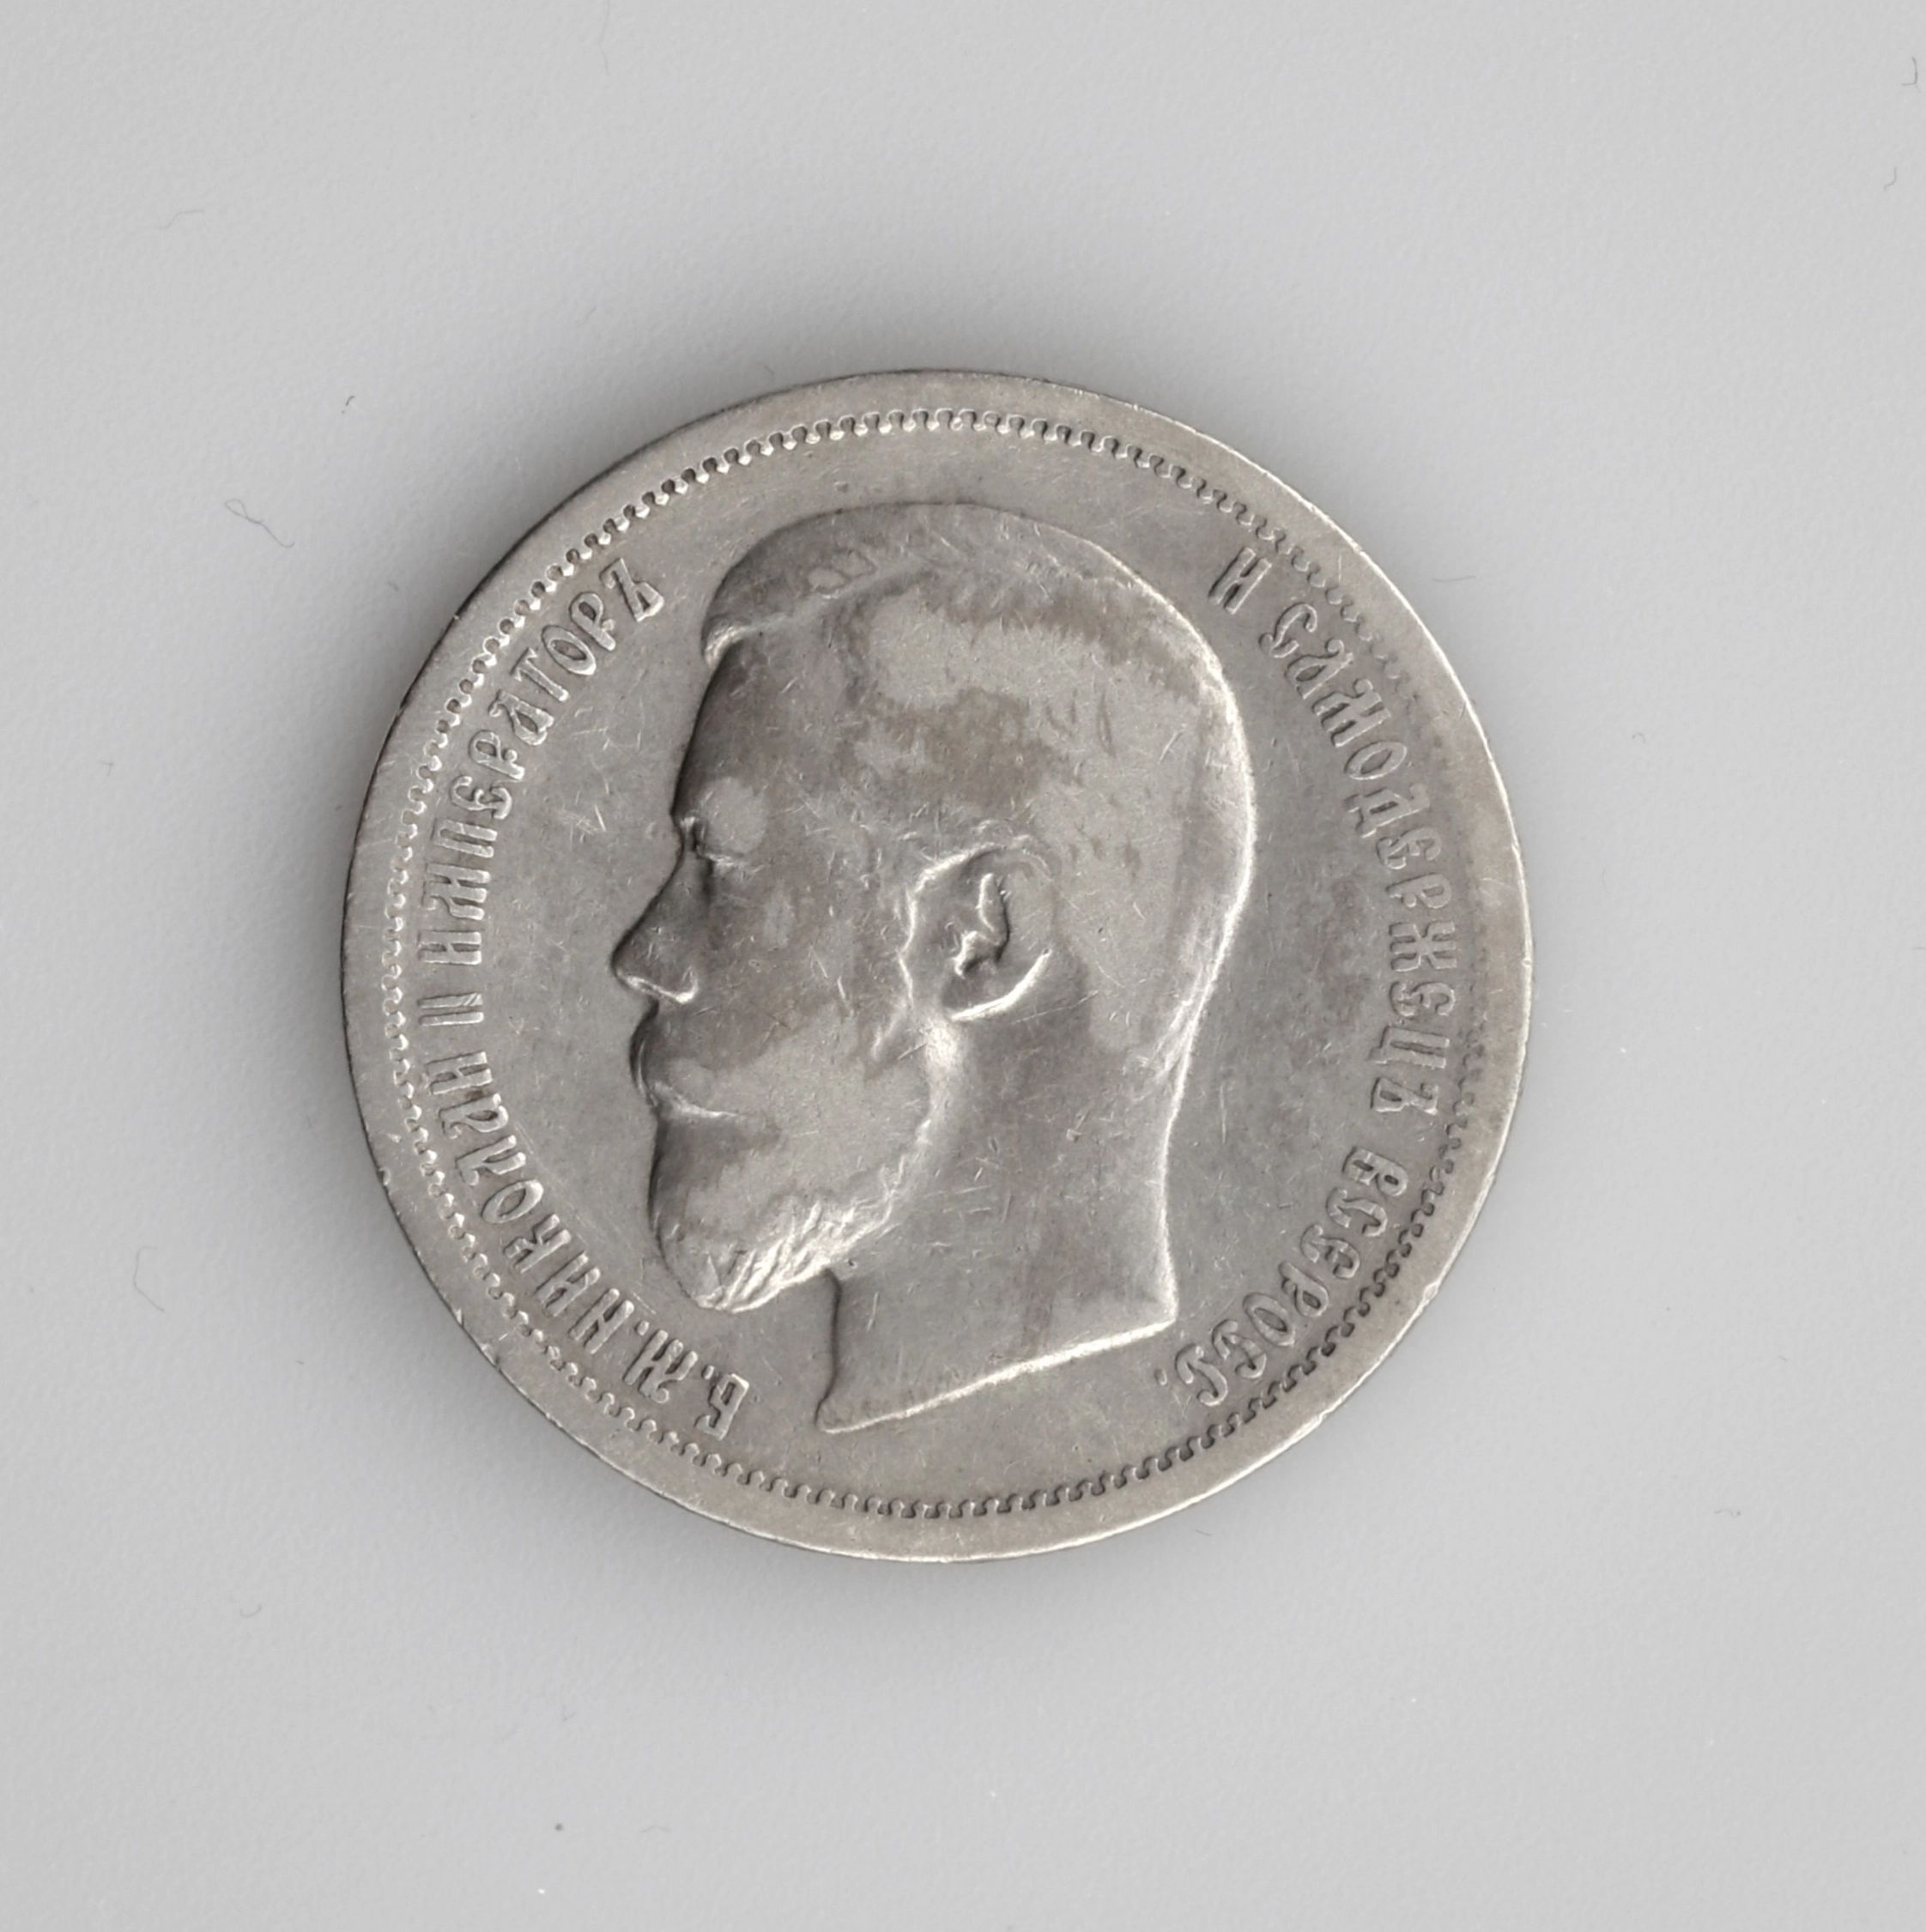 Bolivar Libertador монета. Цена монеты Bolivar Libertador 1921.